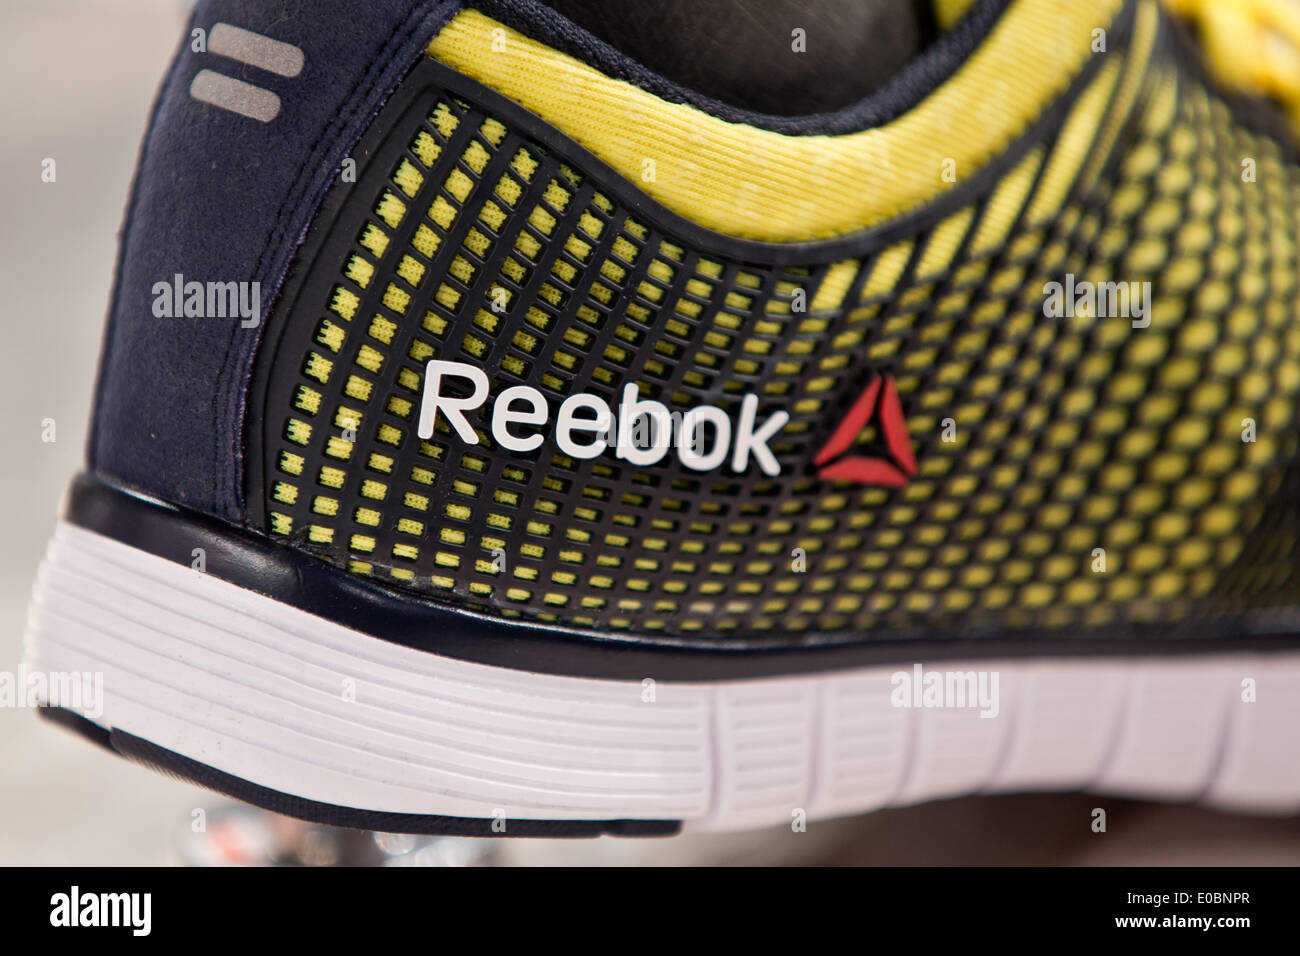 El logotipo de la marca Reebok de fabricante de artículos deportivos Adidas es visto en una zapatilla de fútbol durante la reunión general de en Fürth, Alemania, 08 de mayo de